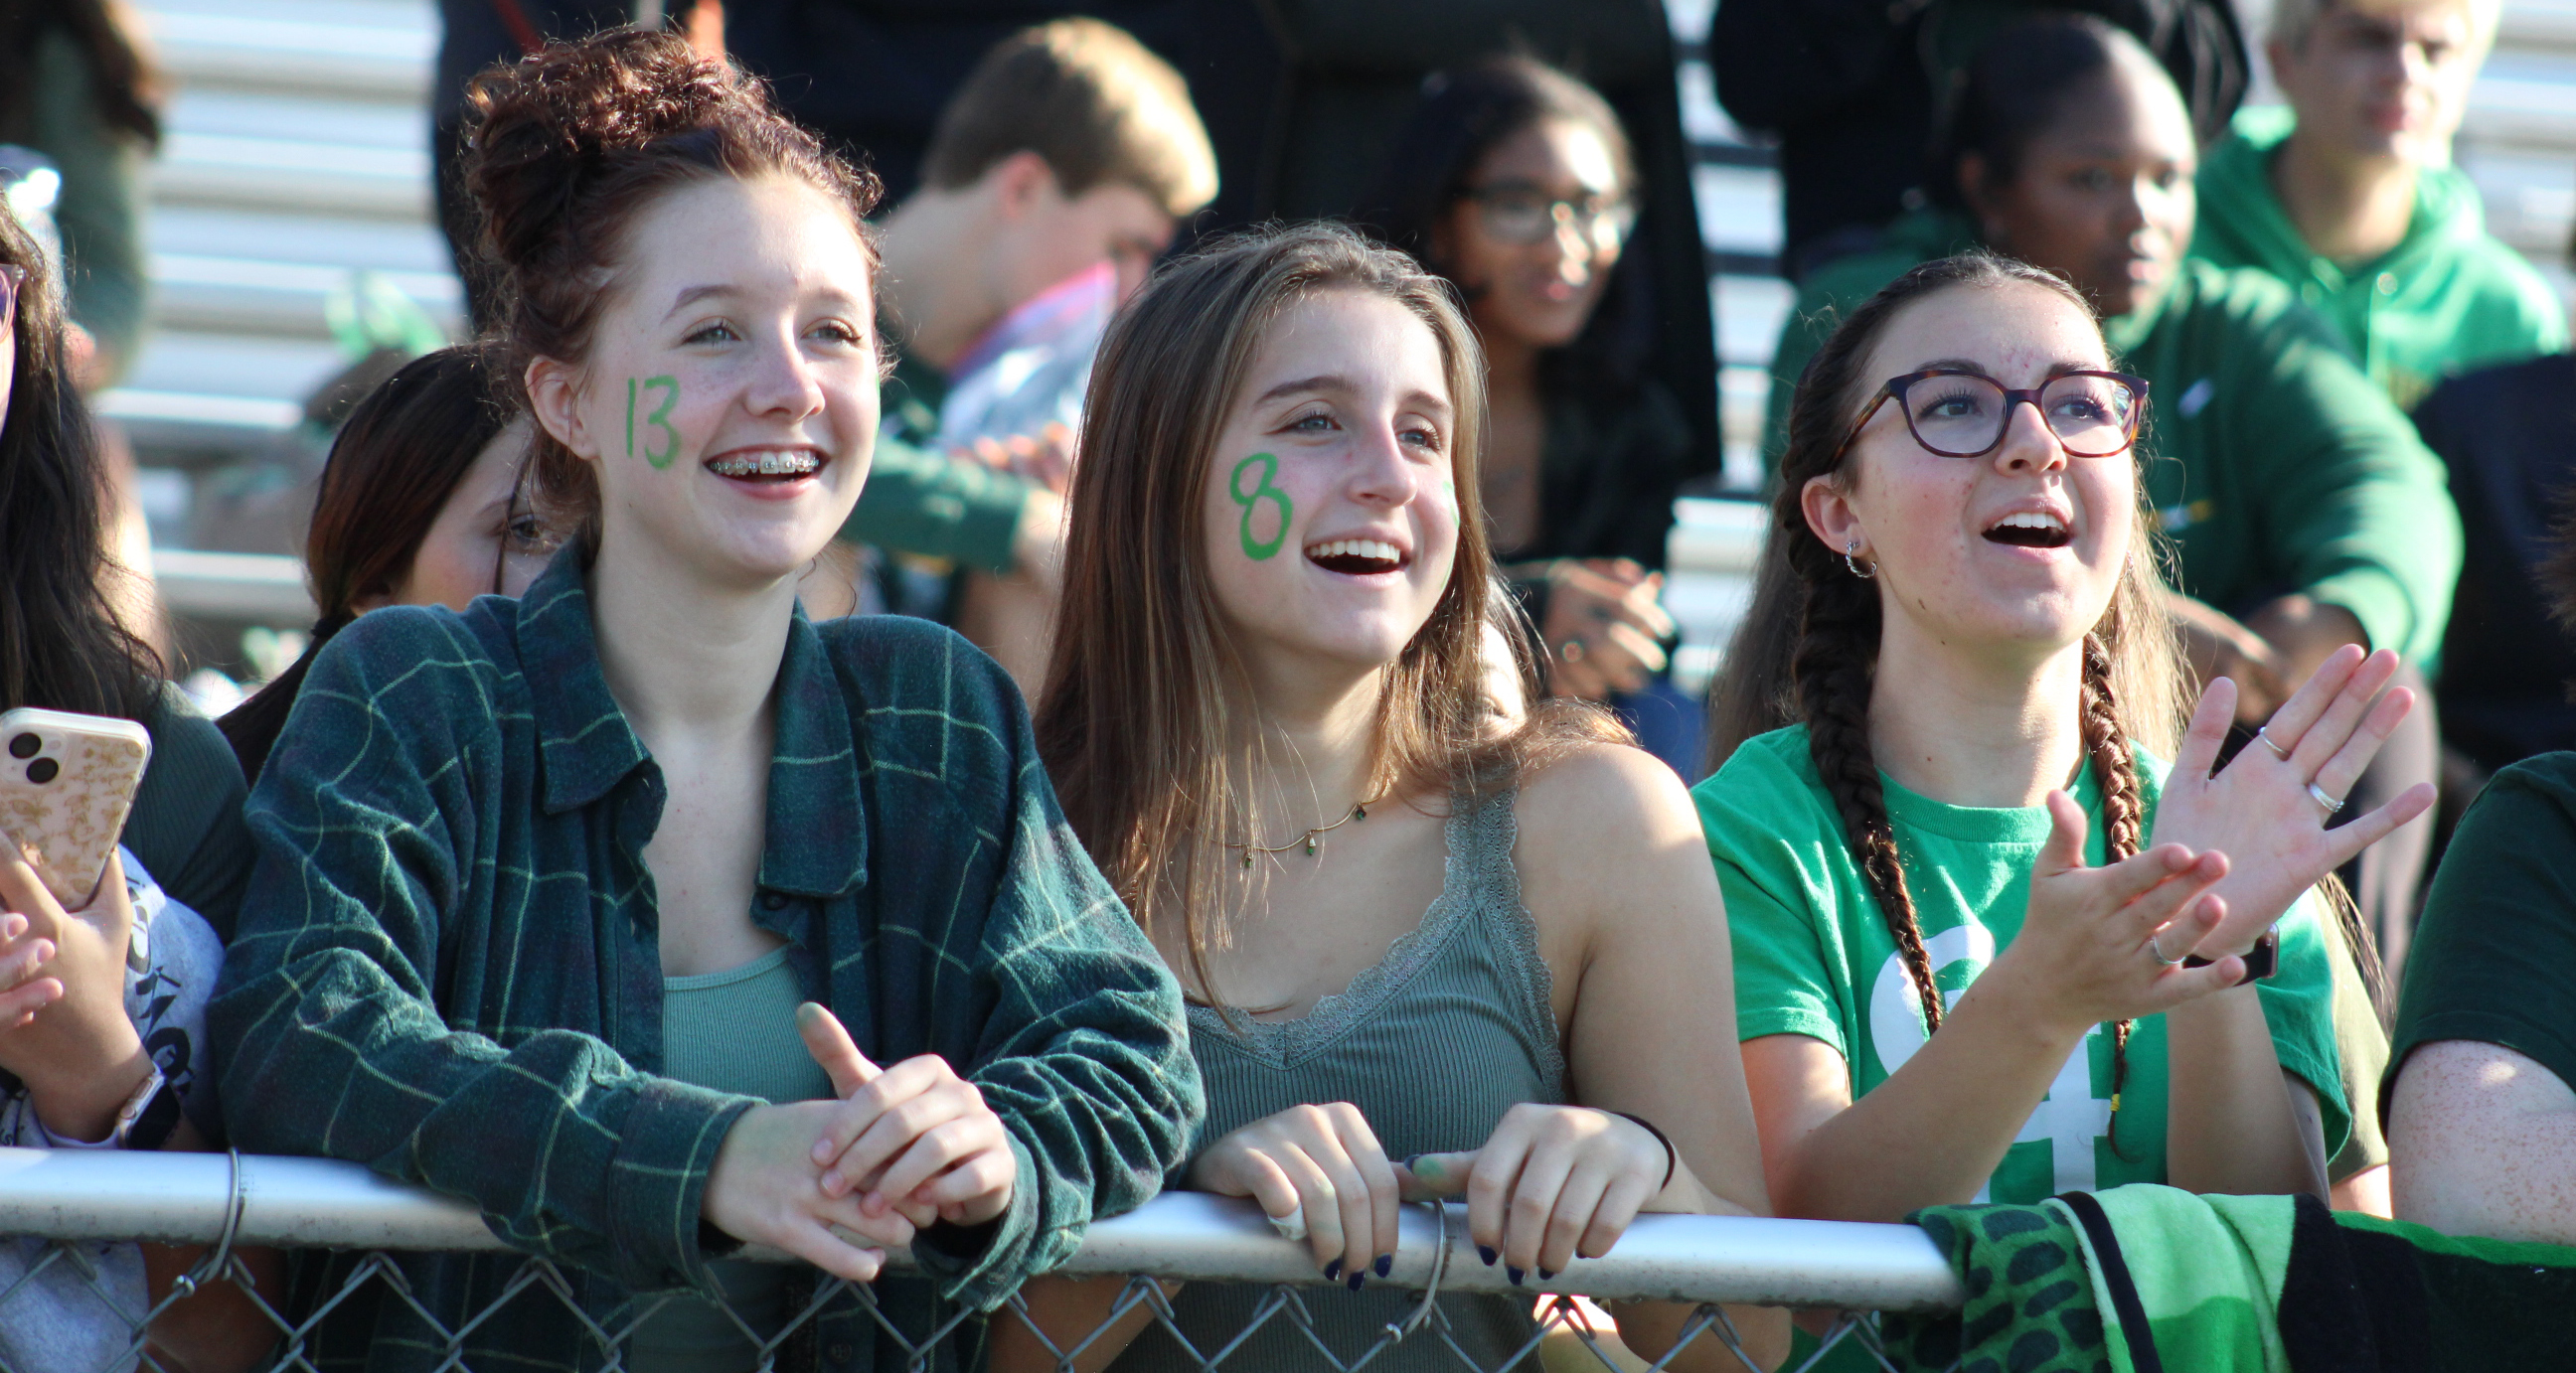 Three girls cheering from the stadium bleachers